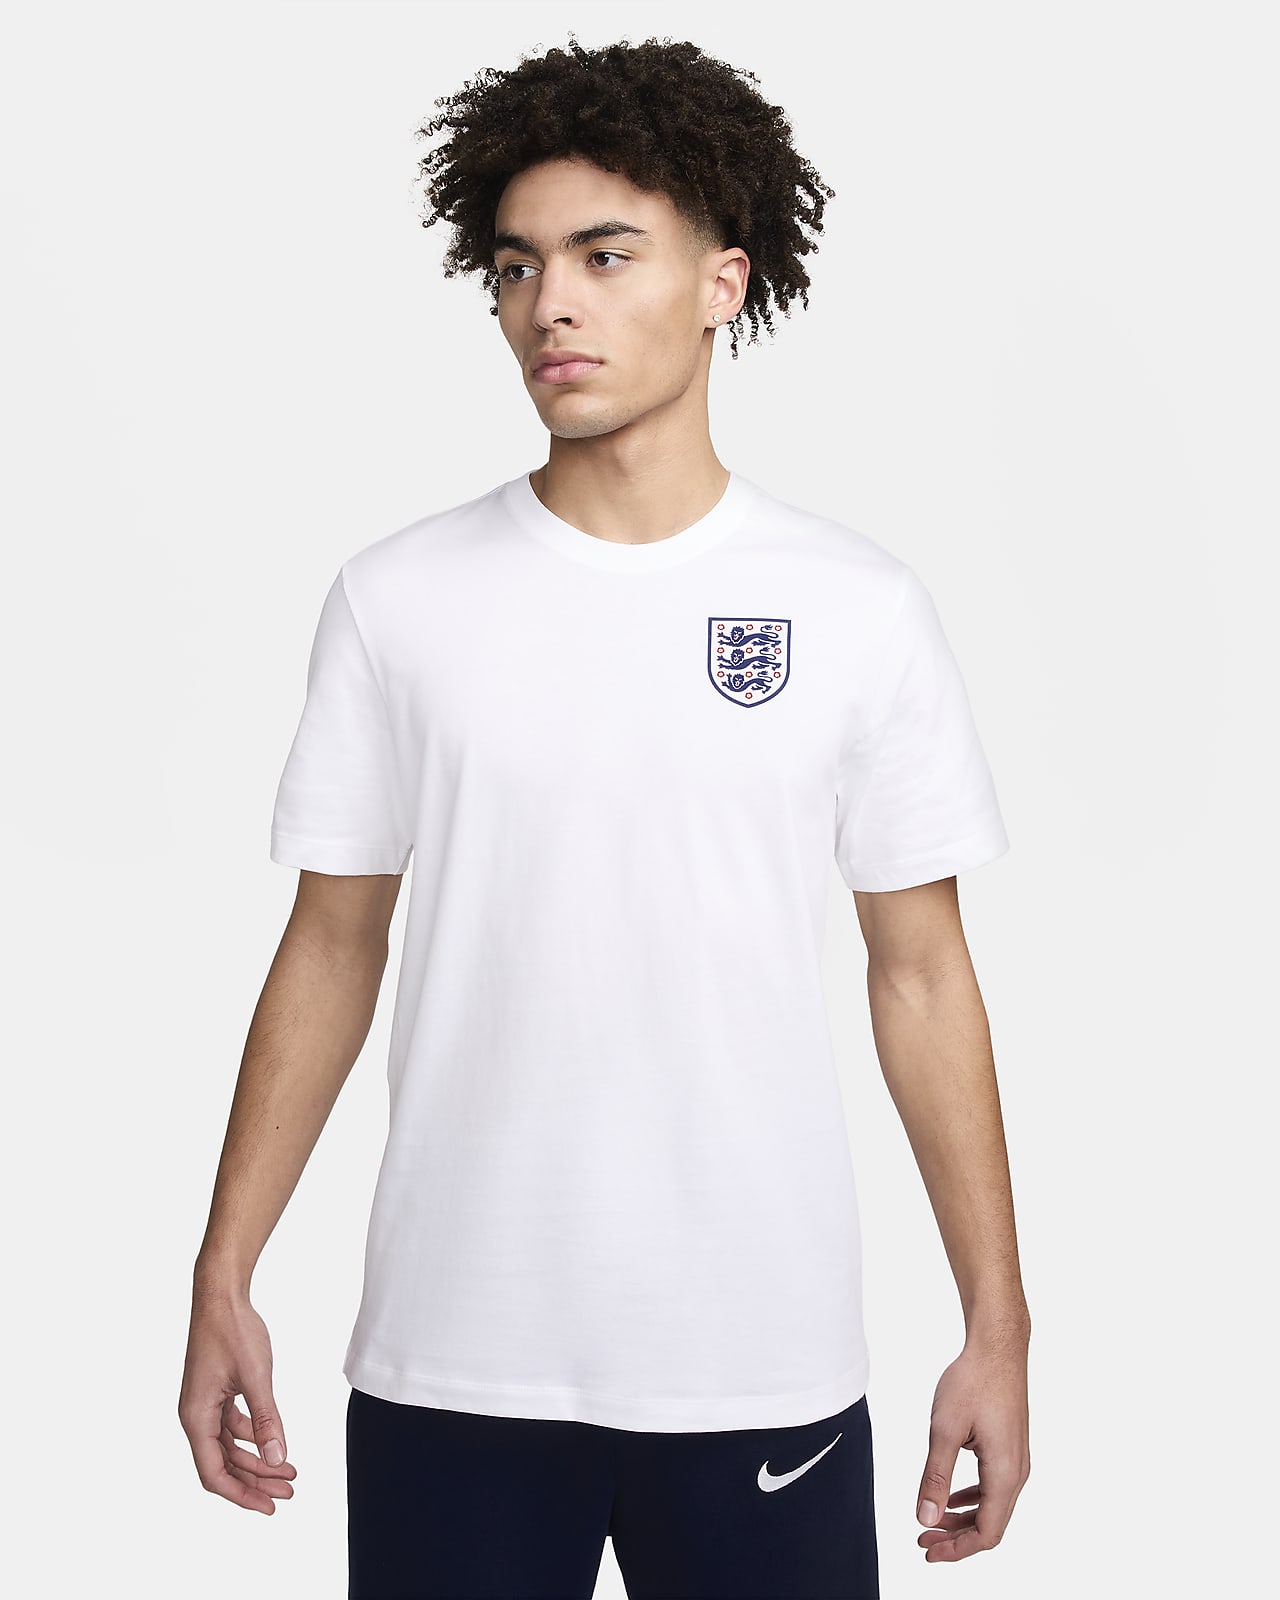 Fotbolls-t-shirt Nike England för män